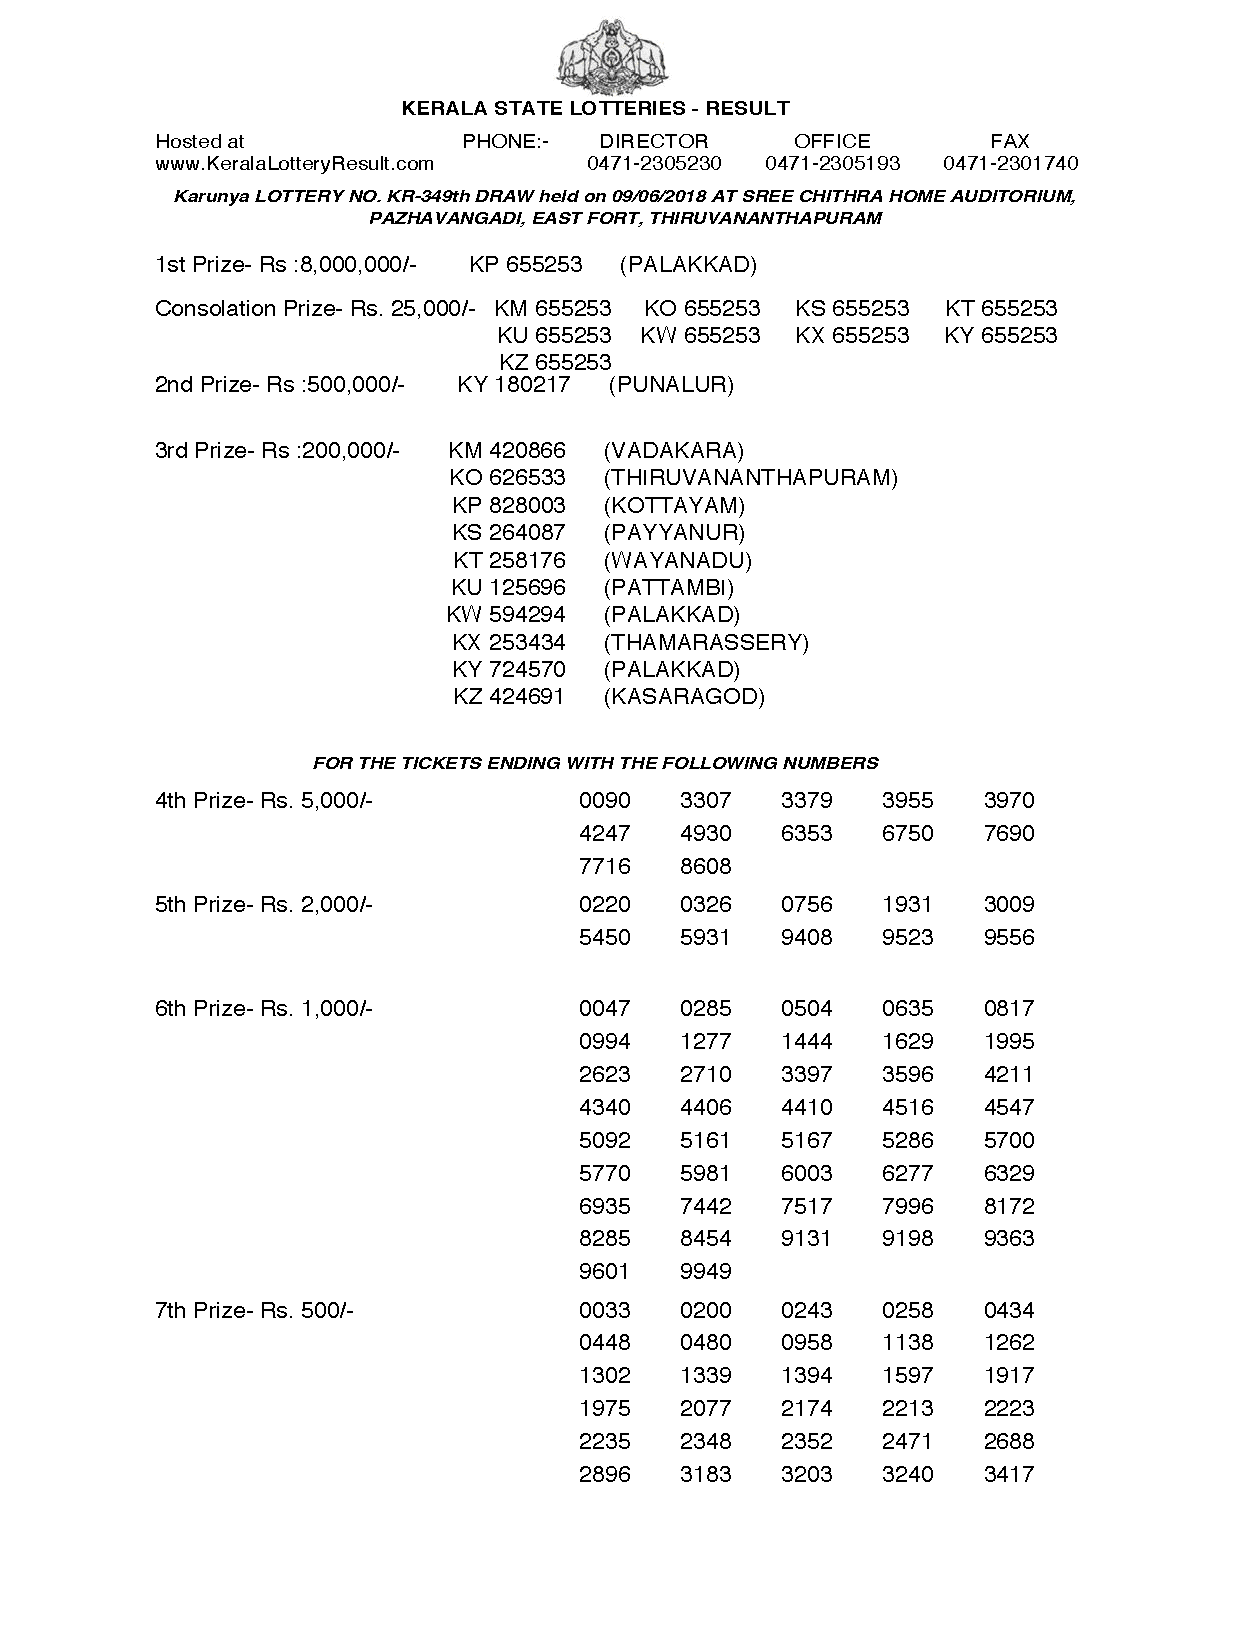 Karunya KR349 Kerala Lottery Results Screenshot: Page 1